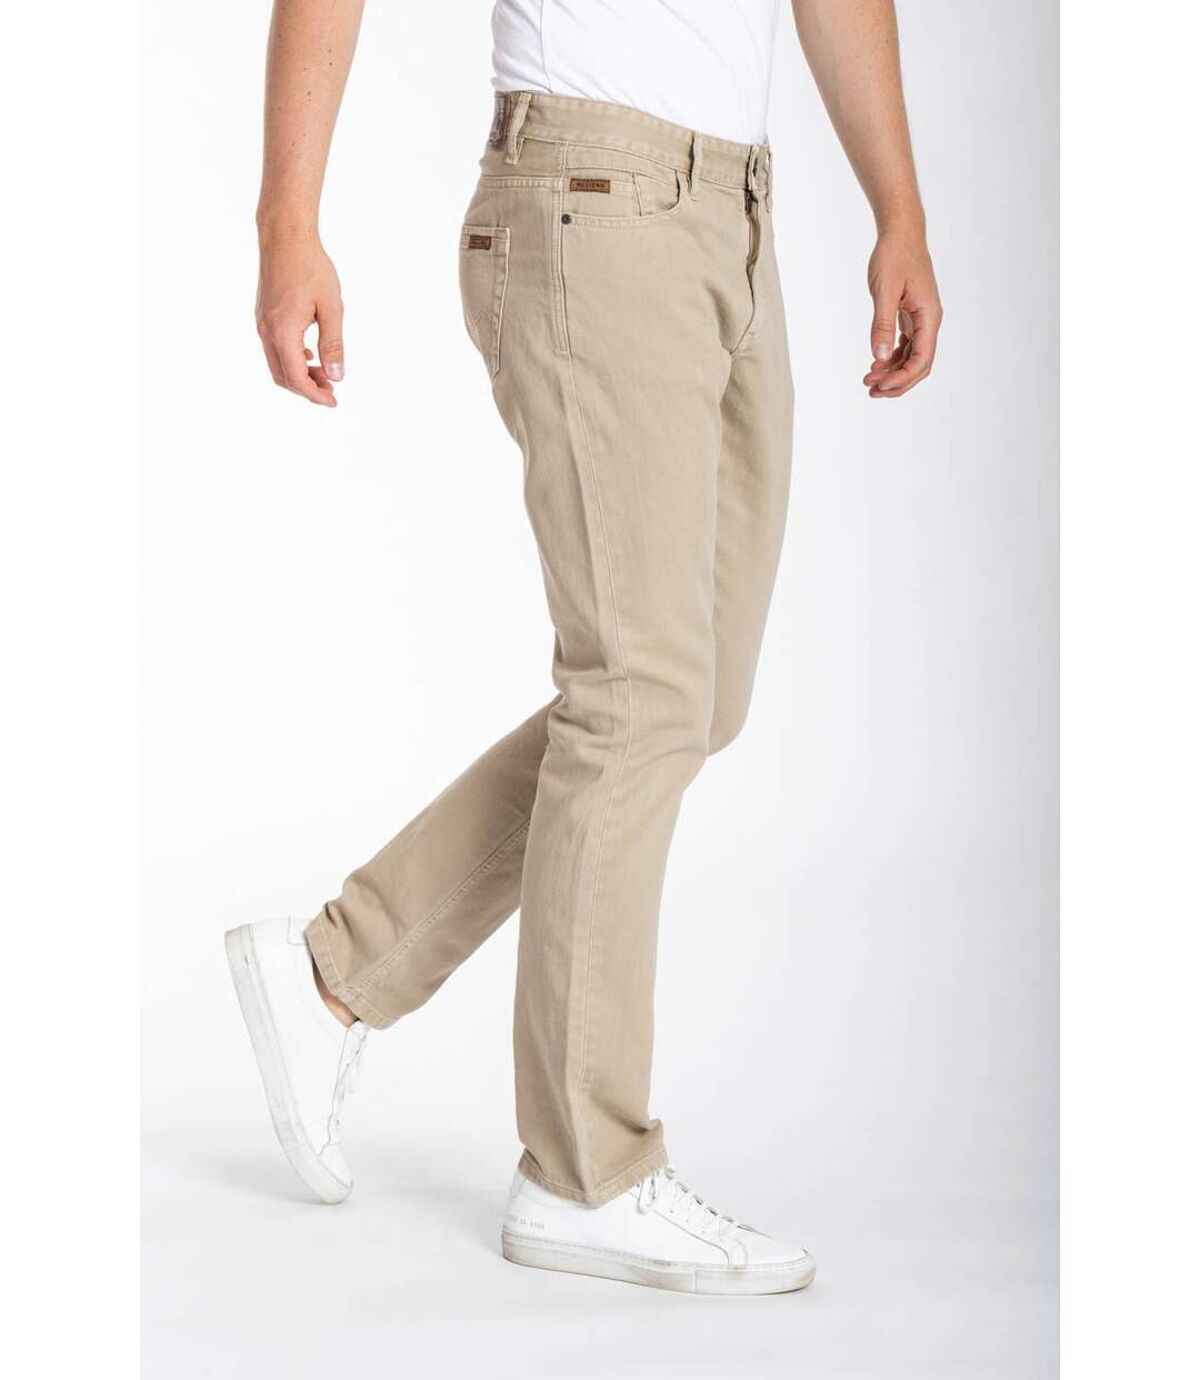 Jeans denim de couleur RL70 coupe confort coton couleur MALACHI rouille